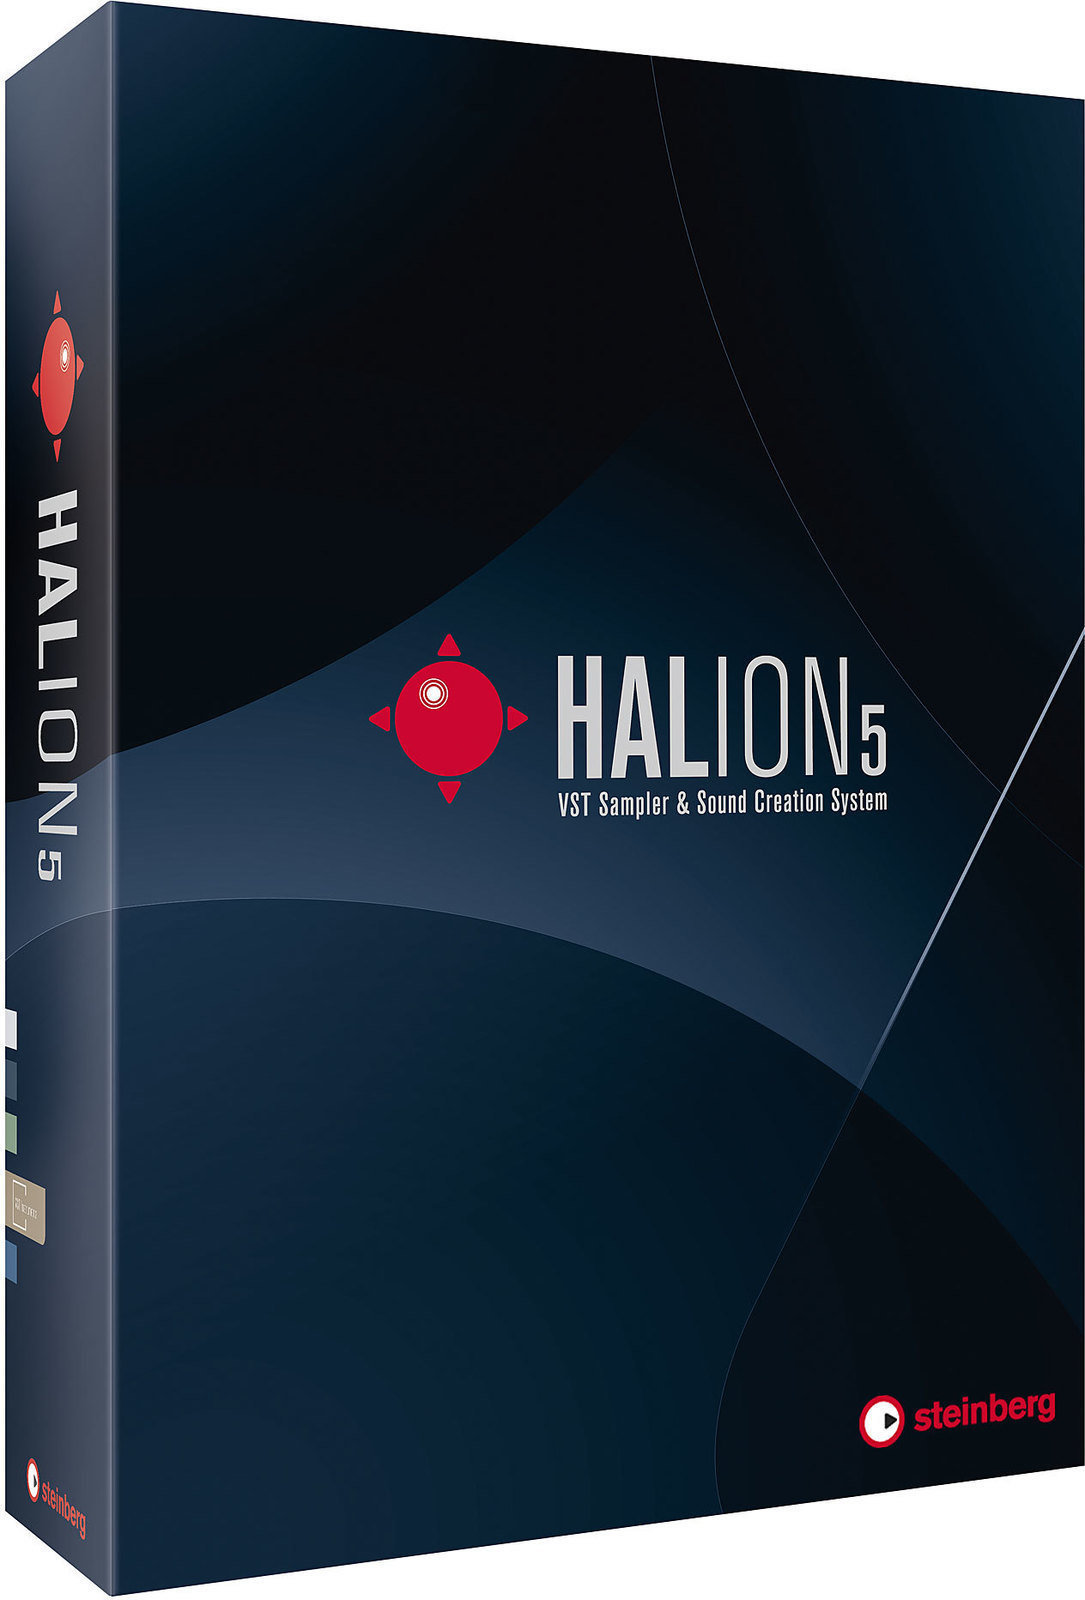 Studio Software Steinberg Halion 5